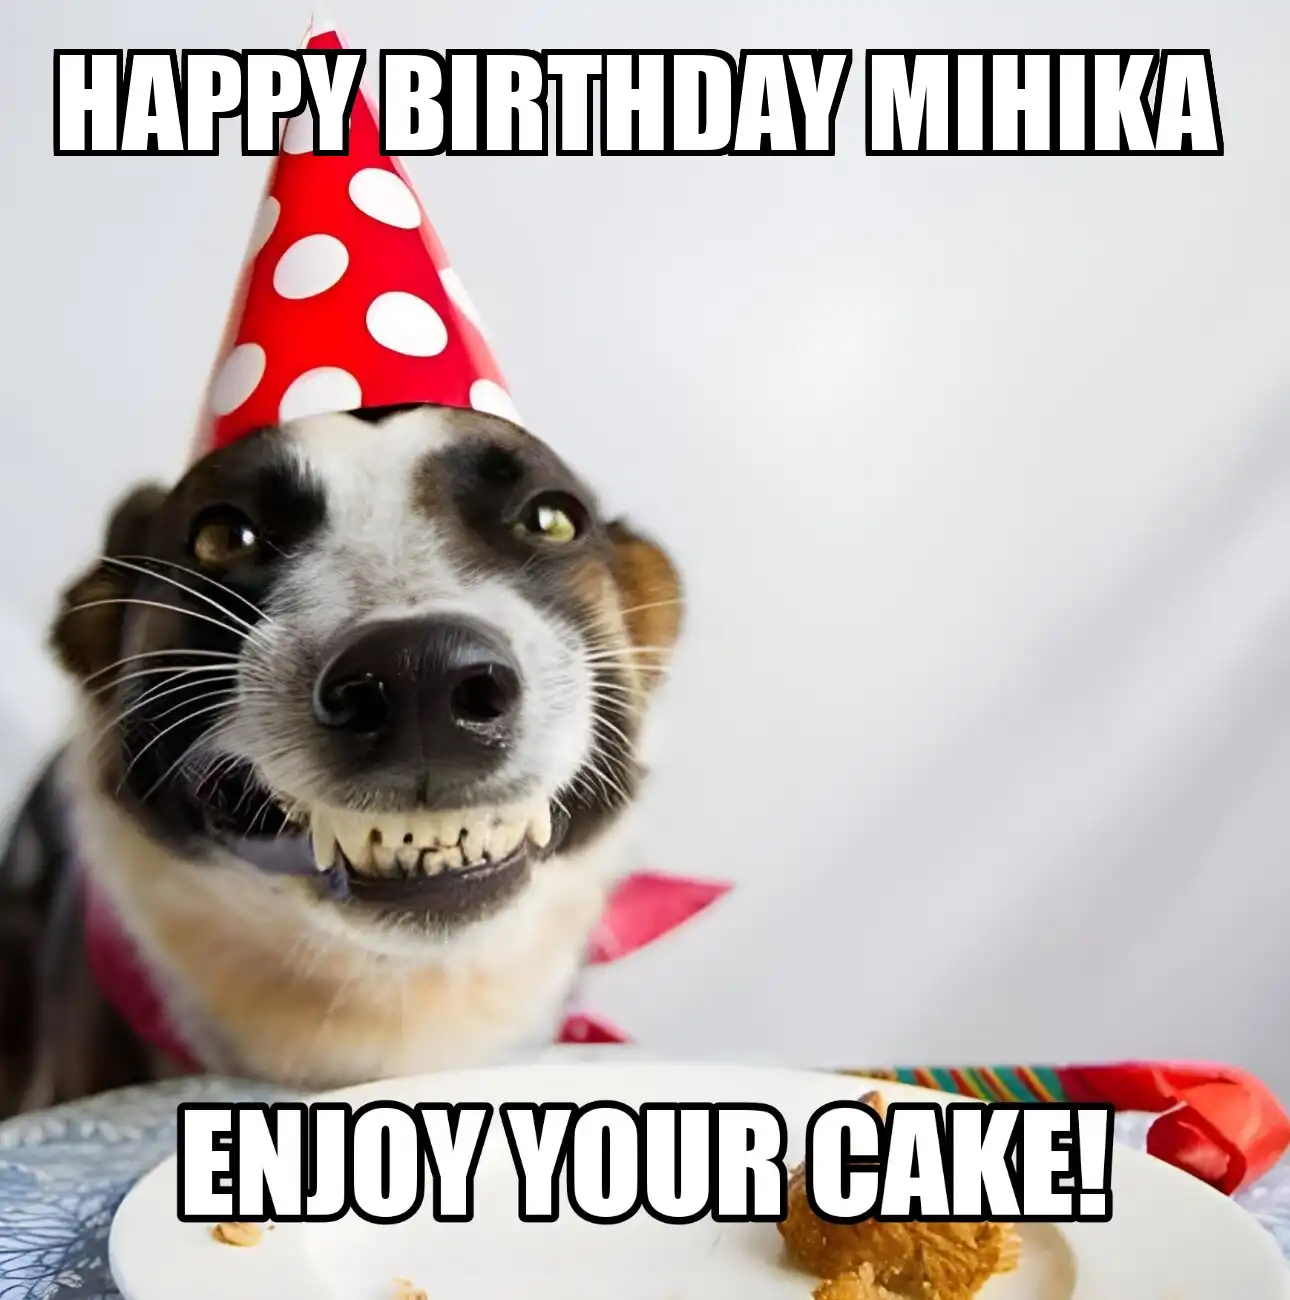 Happy Birthday Mihika Enjoy Your Cake Dog Meme